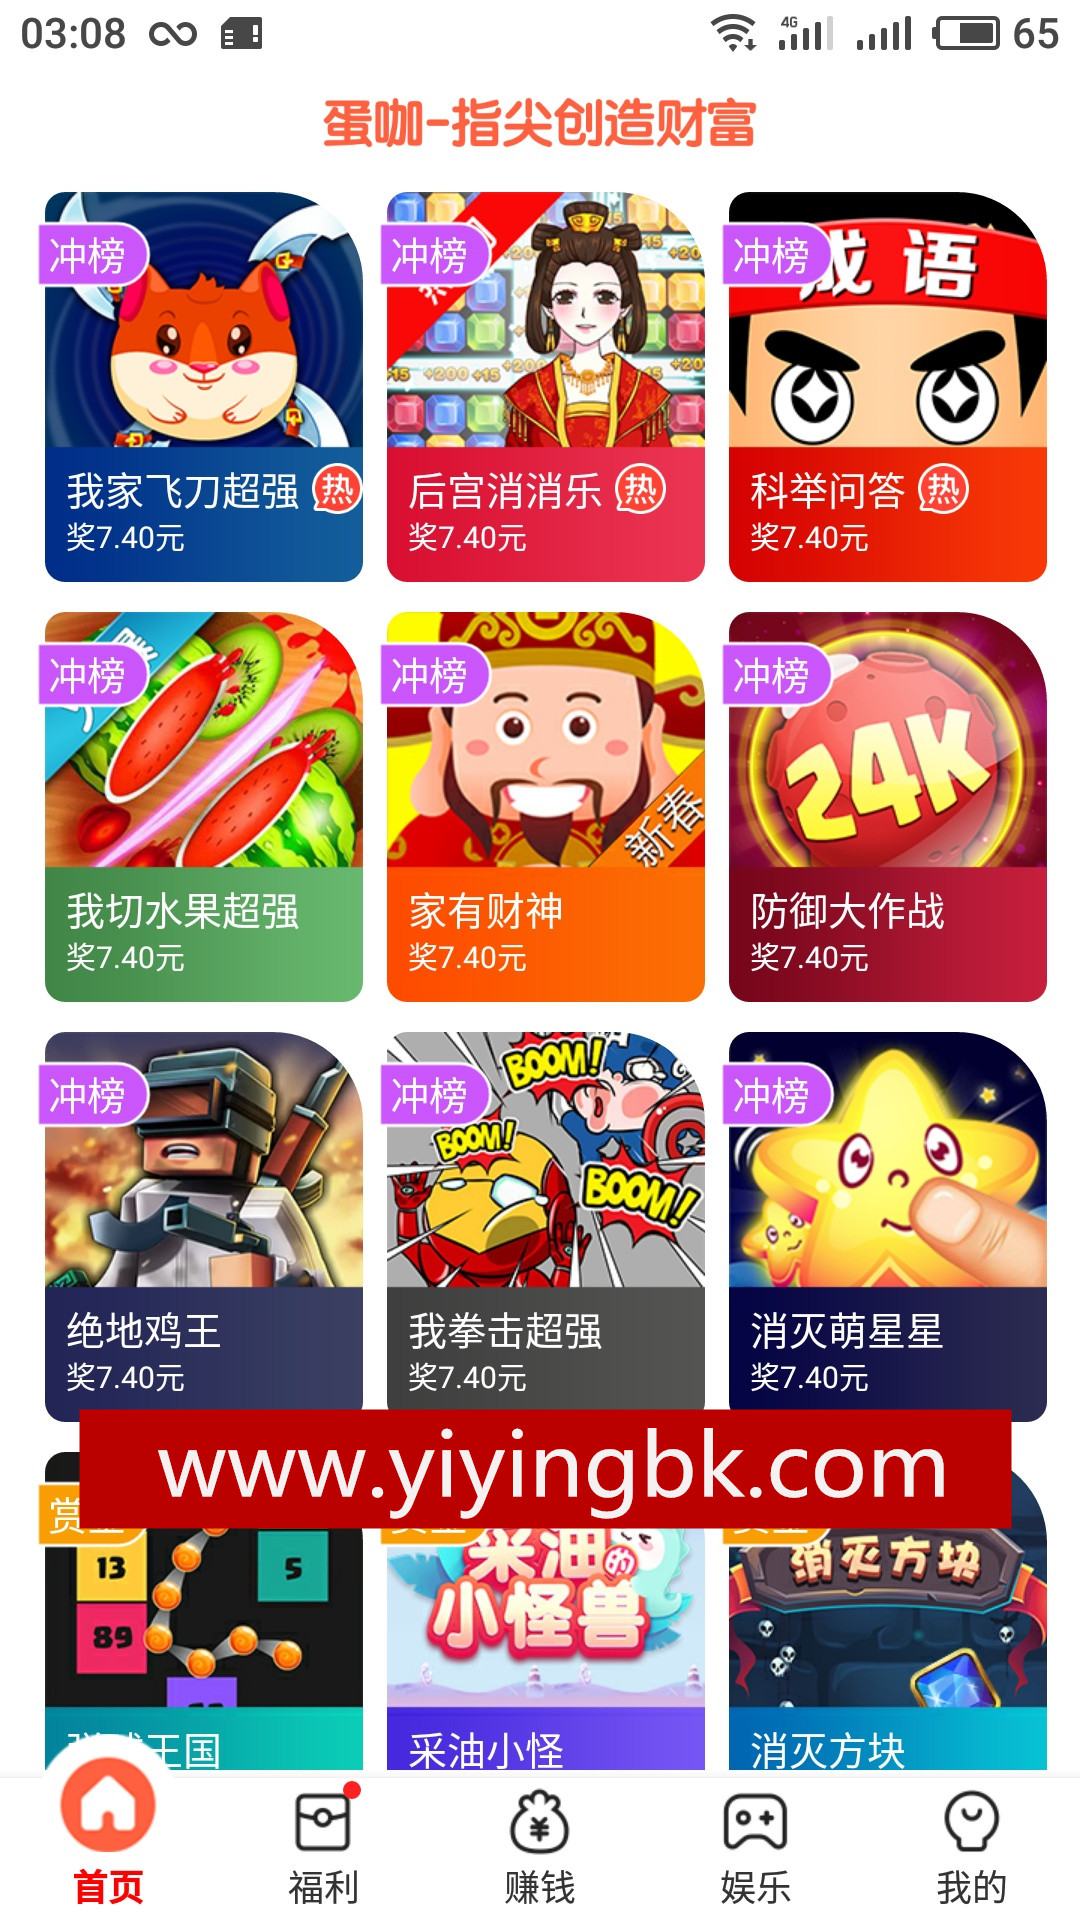 免费玩小游戏赚钱，微信支付宝1元直接提现。www.yiyingbk.com